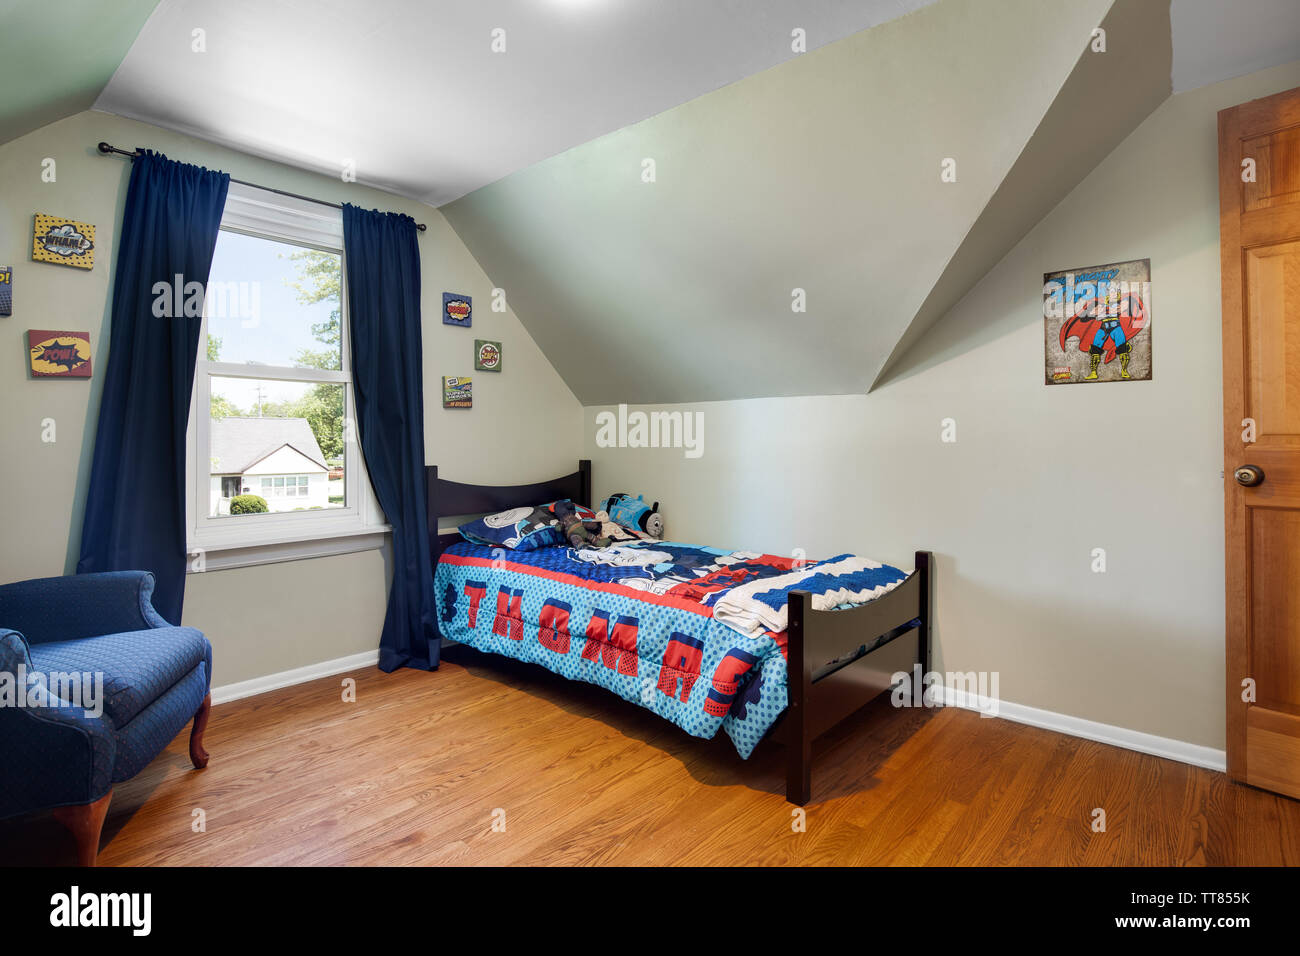 Un giovane ragazzo in camera con Thomas il treno set letto, una sedia blu nell'angolo e alcune immagini di supereroi sulla parete. Foto Stock